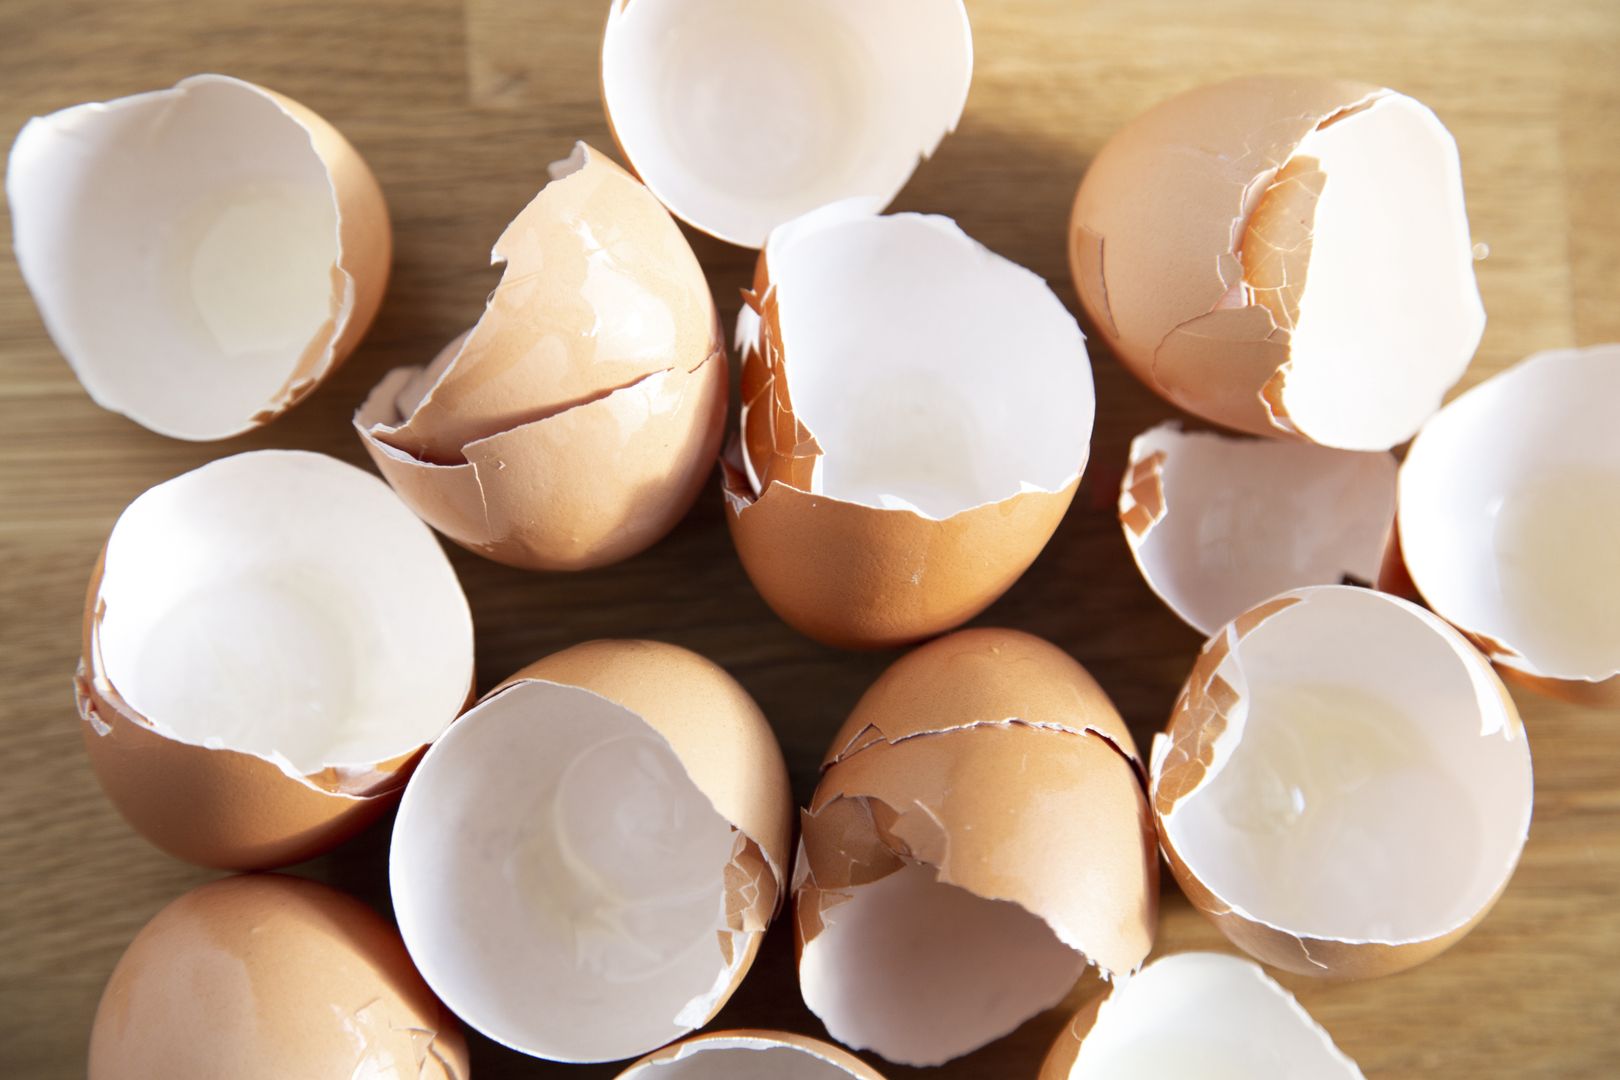 Nie wyrzucaj skorupek po jajkach. Mają wyjątkowe zastosowanie